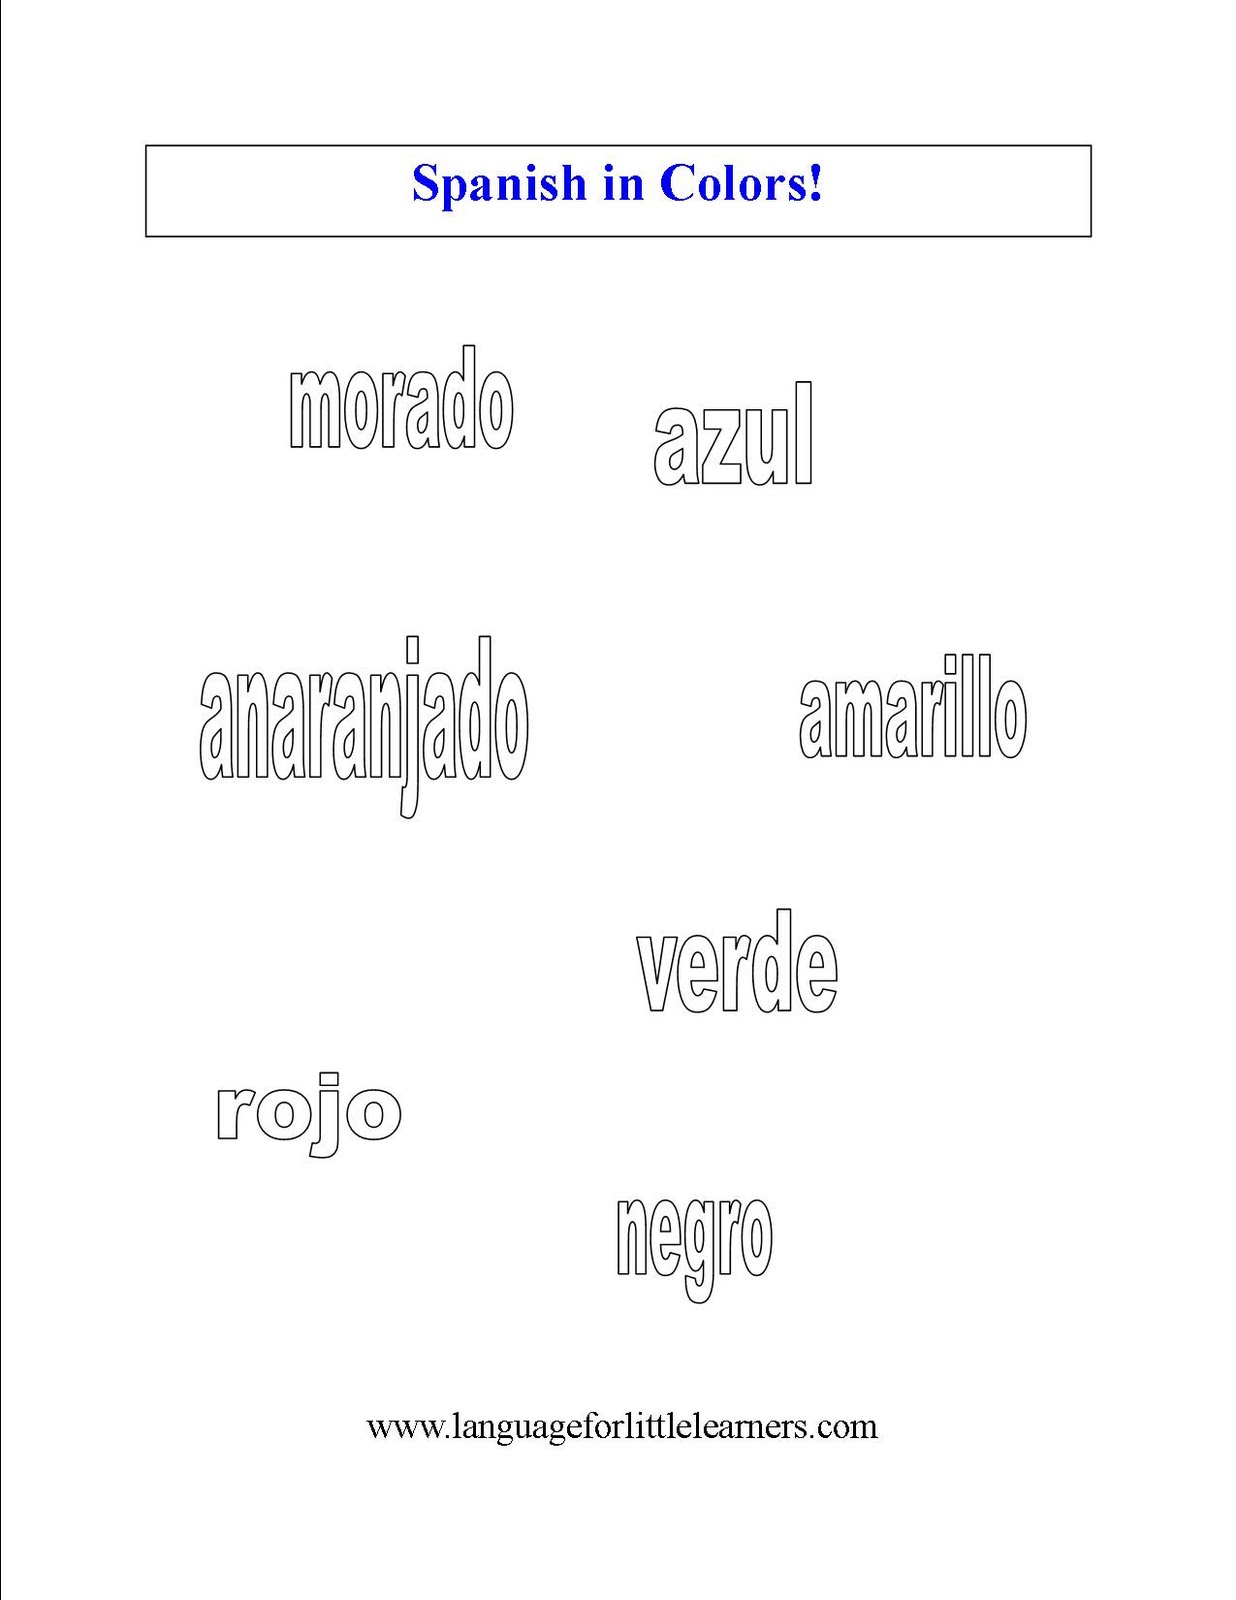 Spanish Color Words Worksheet Image